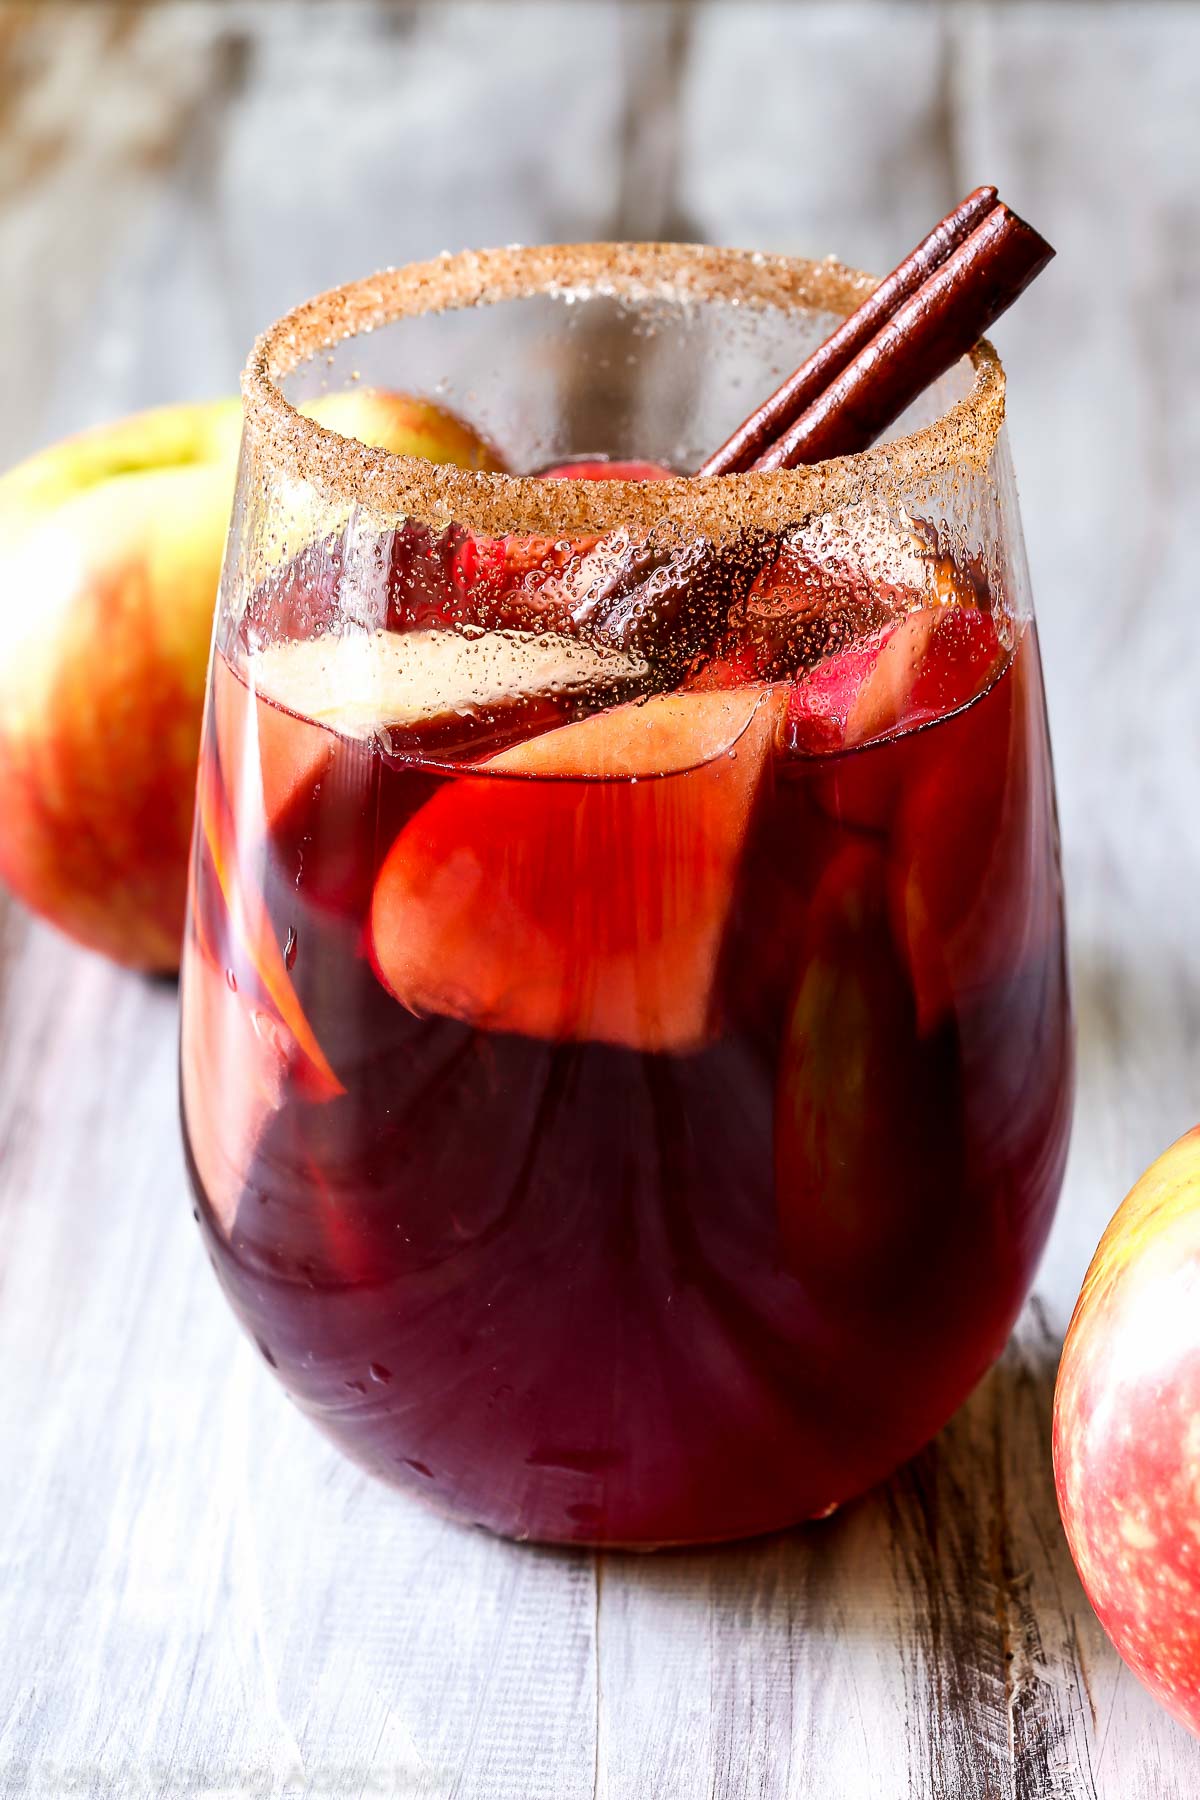 Cette sangria est LA boisson à réaliser cet automne. Il combine du vin rouge, de l'eau-de-vie, de la cannelle, du cidre de pomme, des agrumes et bien sûr - des pommes douces au miel! sallysbakingaddiction.com